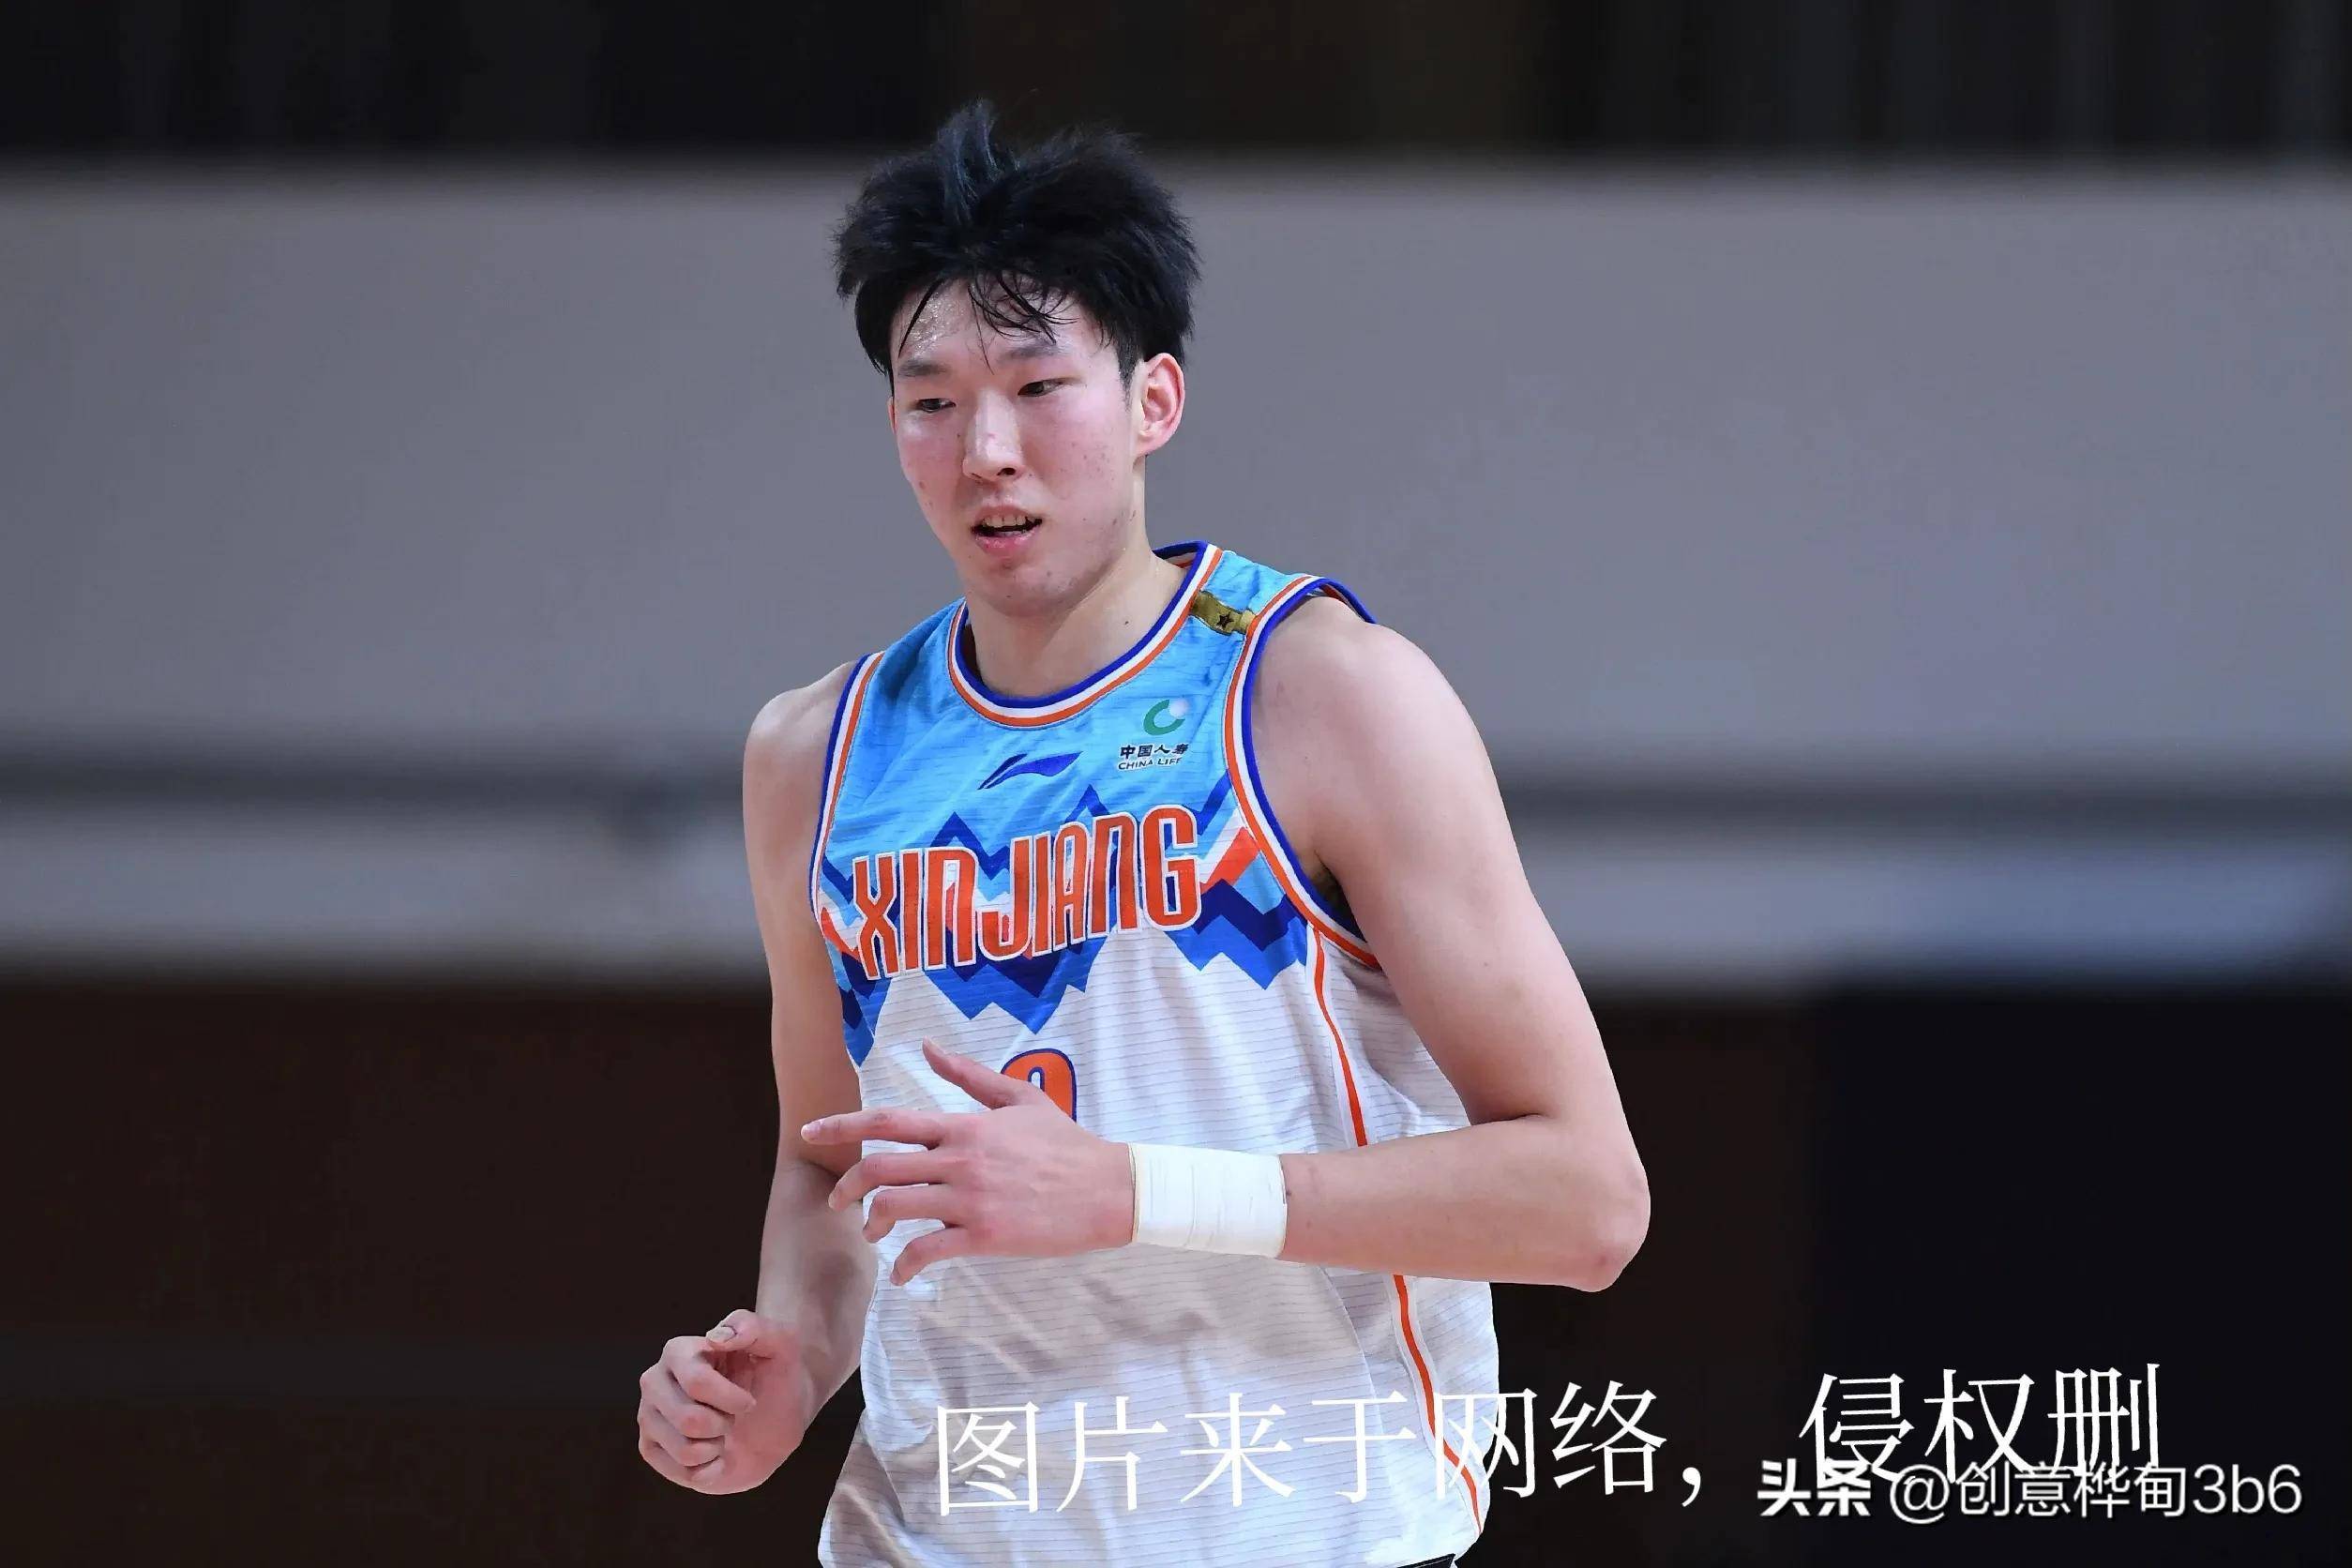 你们认识周琦吗？他是中国职业篮球运发动，很超卓的一个帅哥